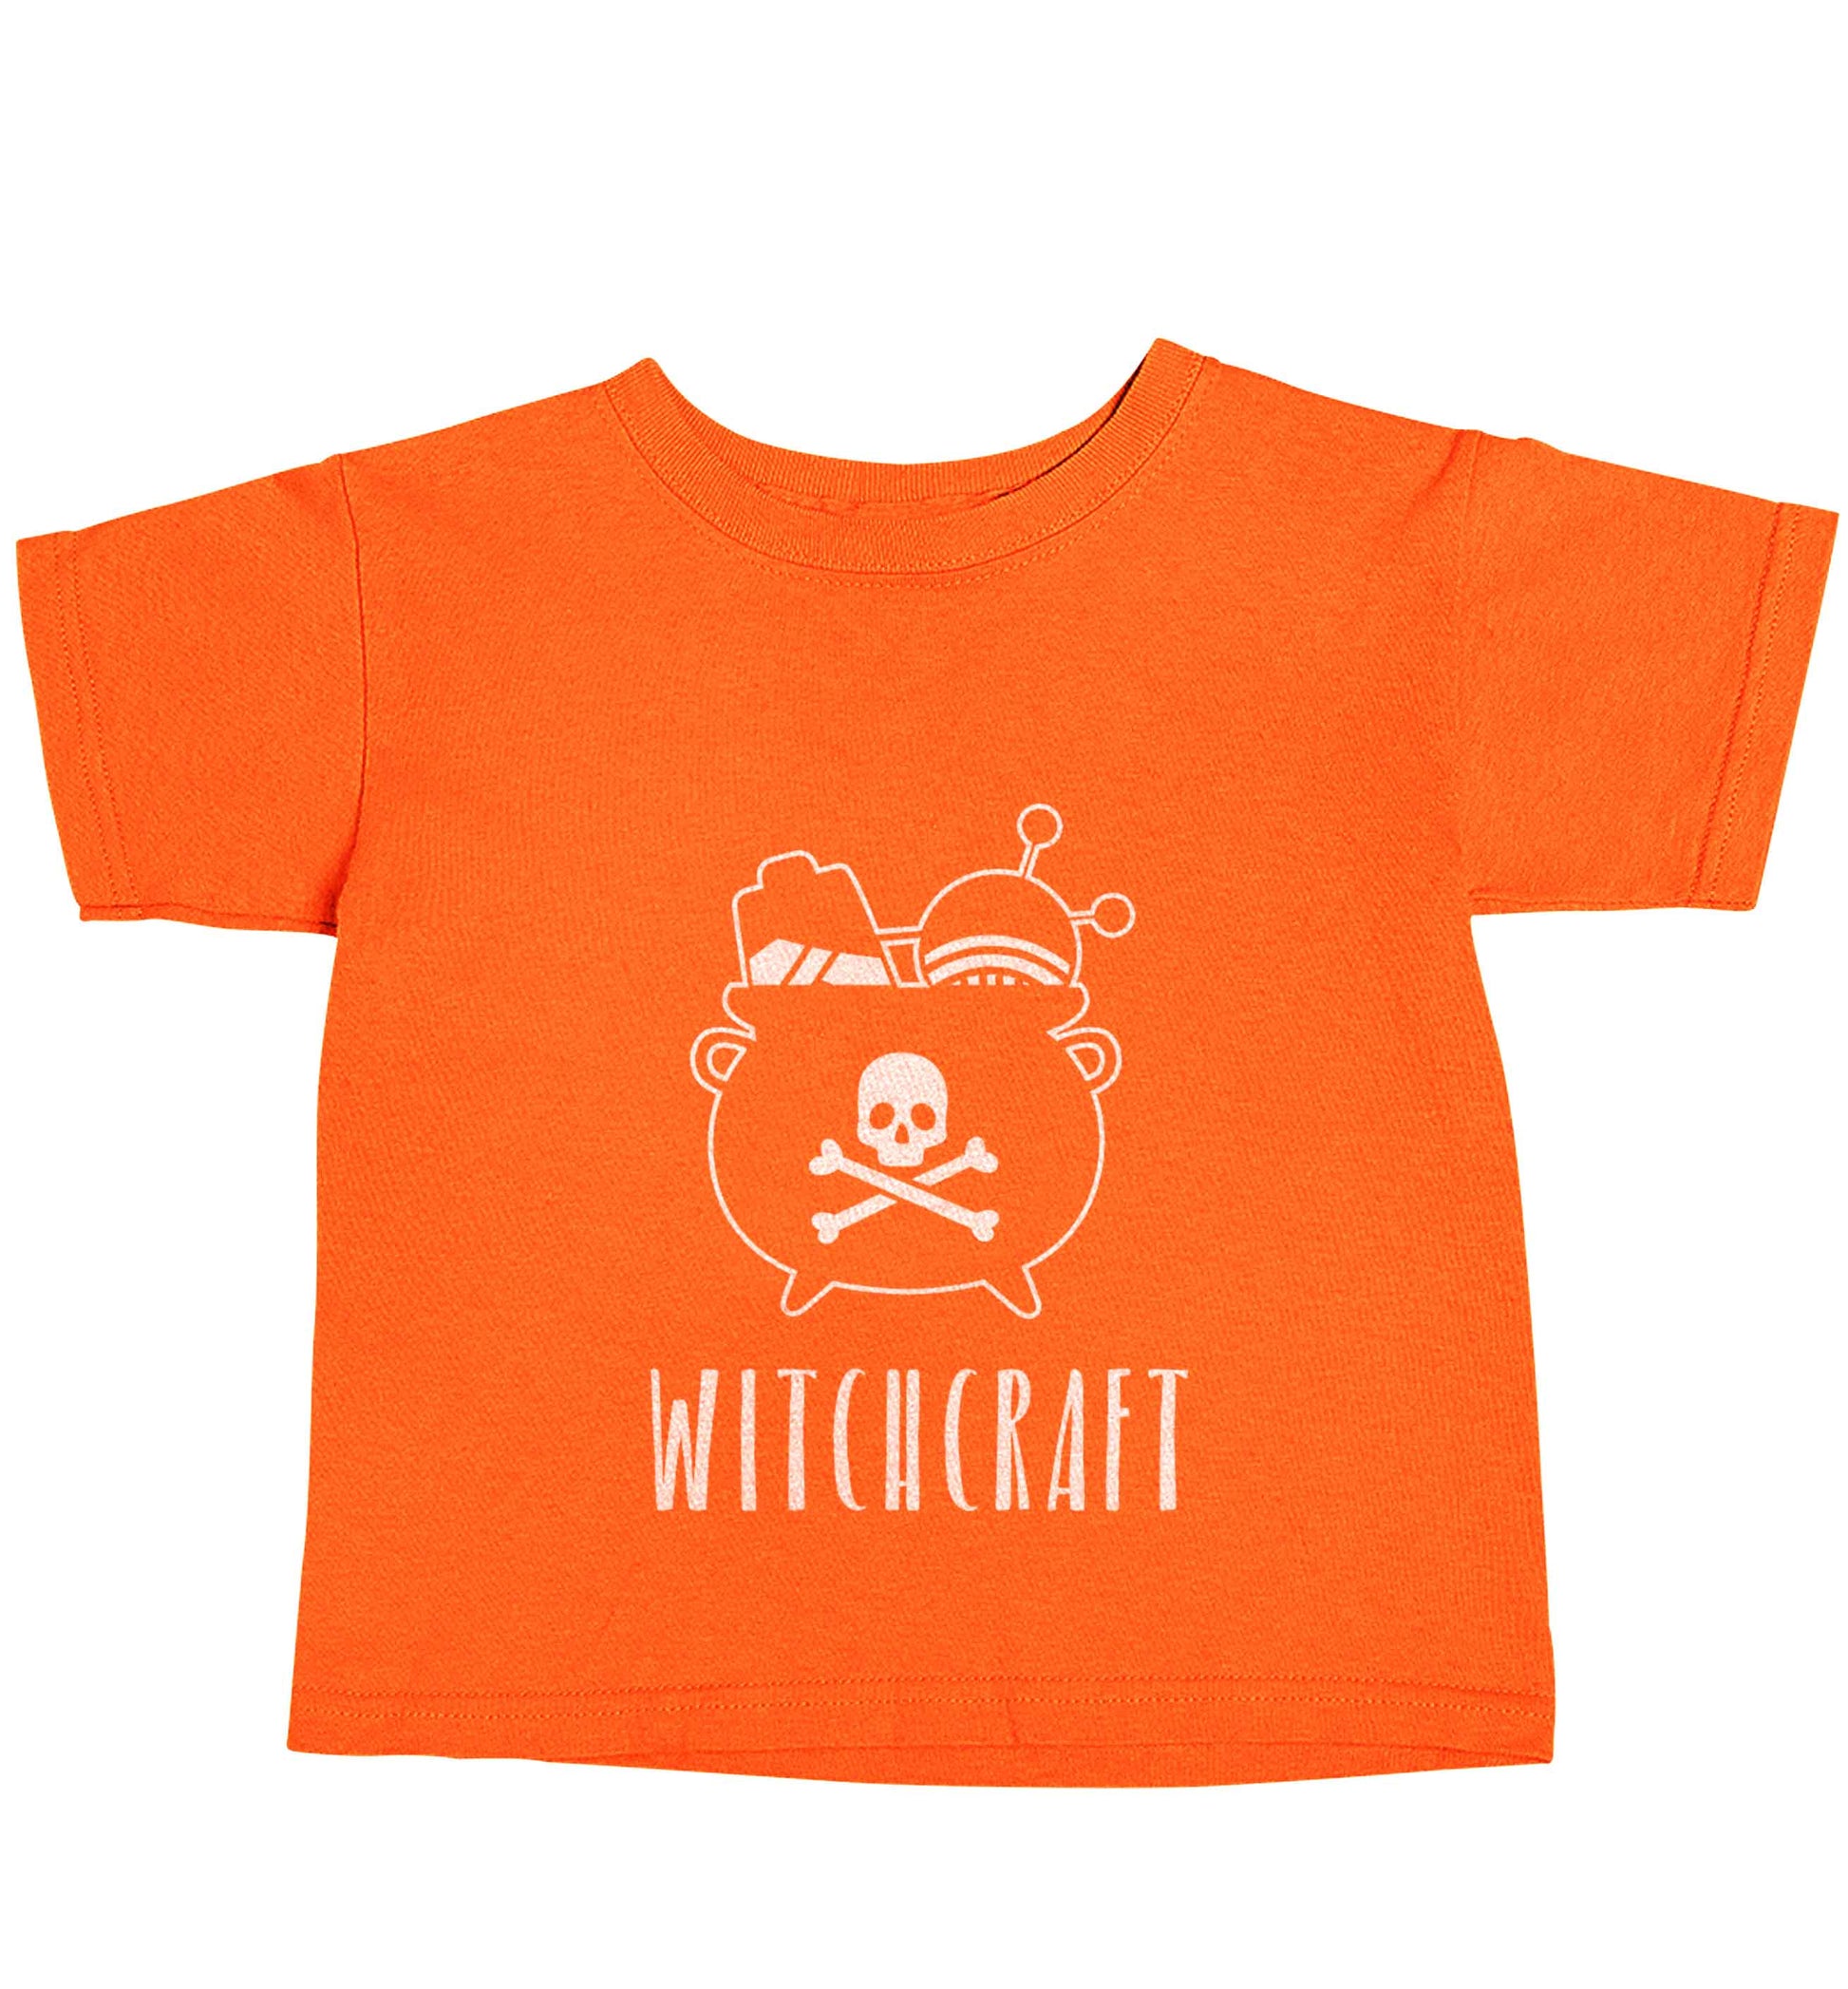 Witchcraft orange baby toddler Tshirt 2 Years